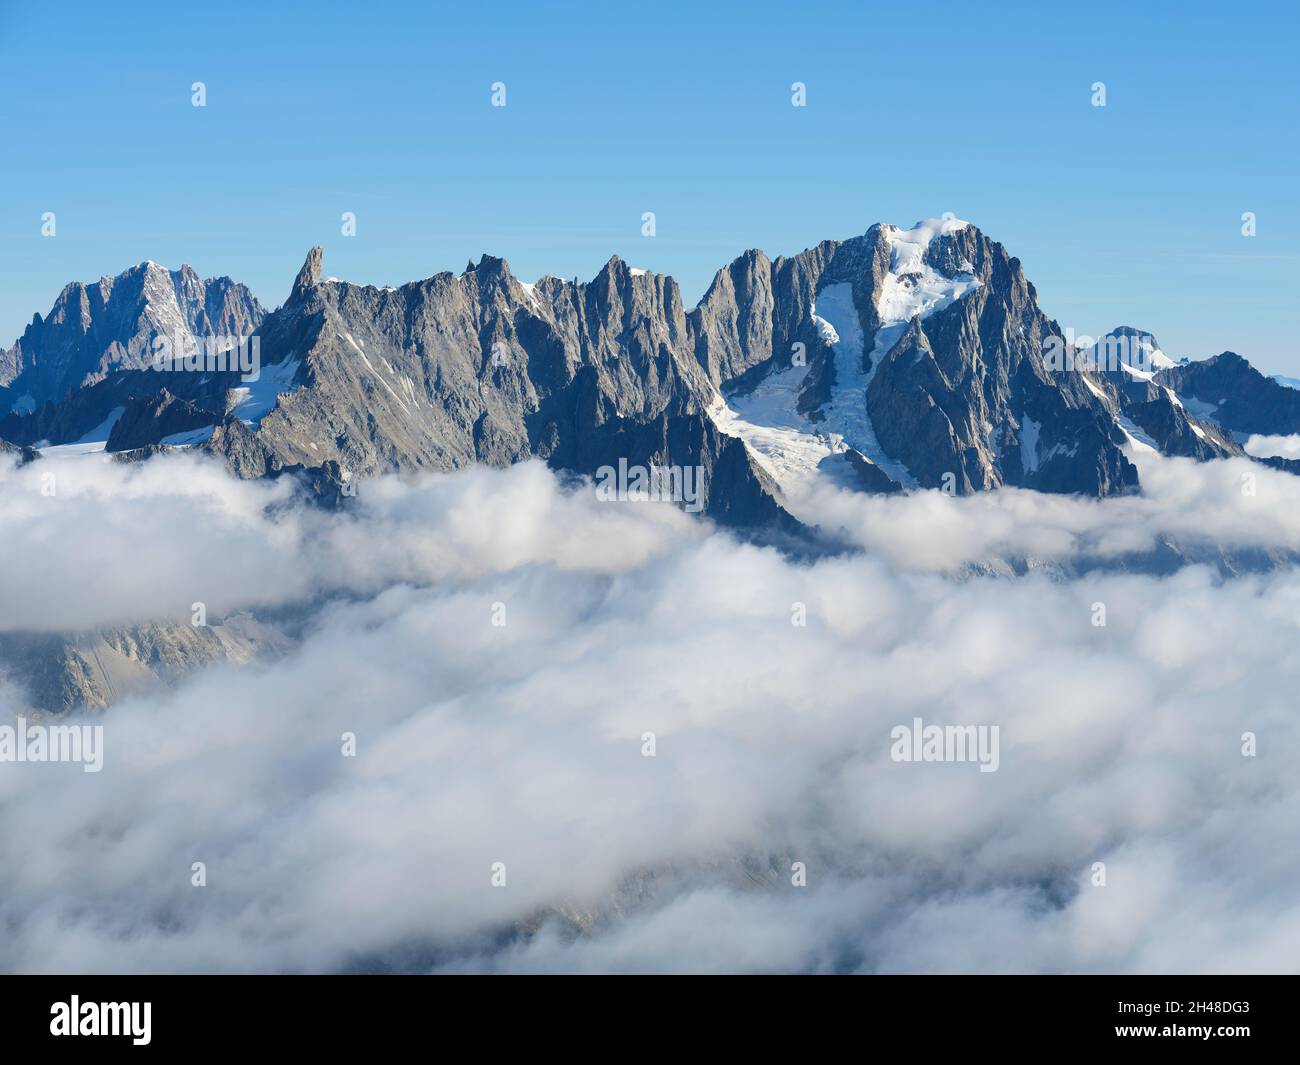 VISTA AEREA. Faccia sud-orientale di Aiguille du Géant e le Grandes Jorasses sopra un mare di nuvole. Val Ferret, Courmayeur, Valle d'Aosta, Italia. Foto Stock